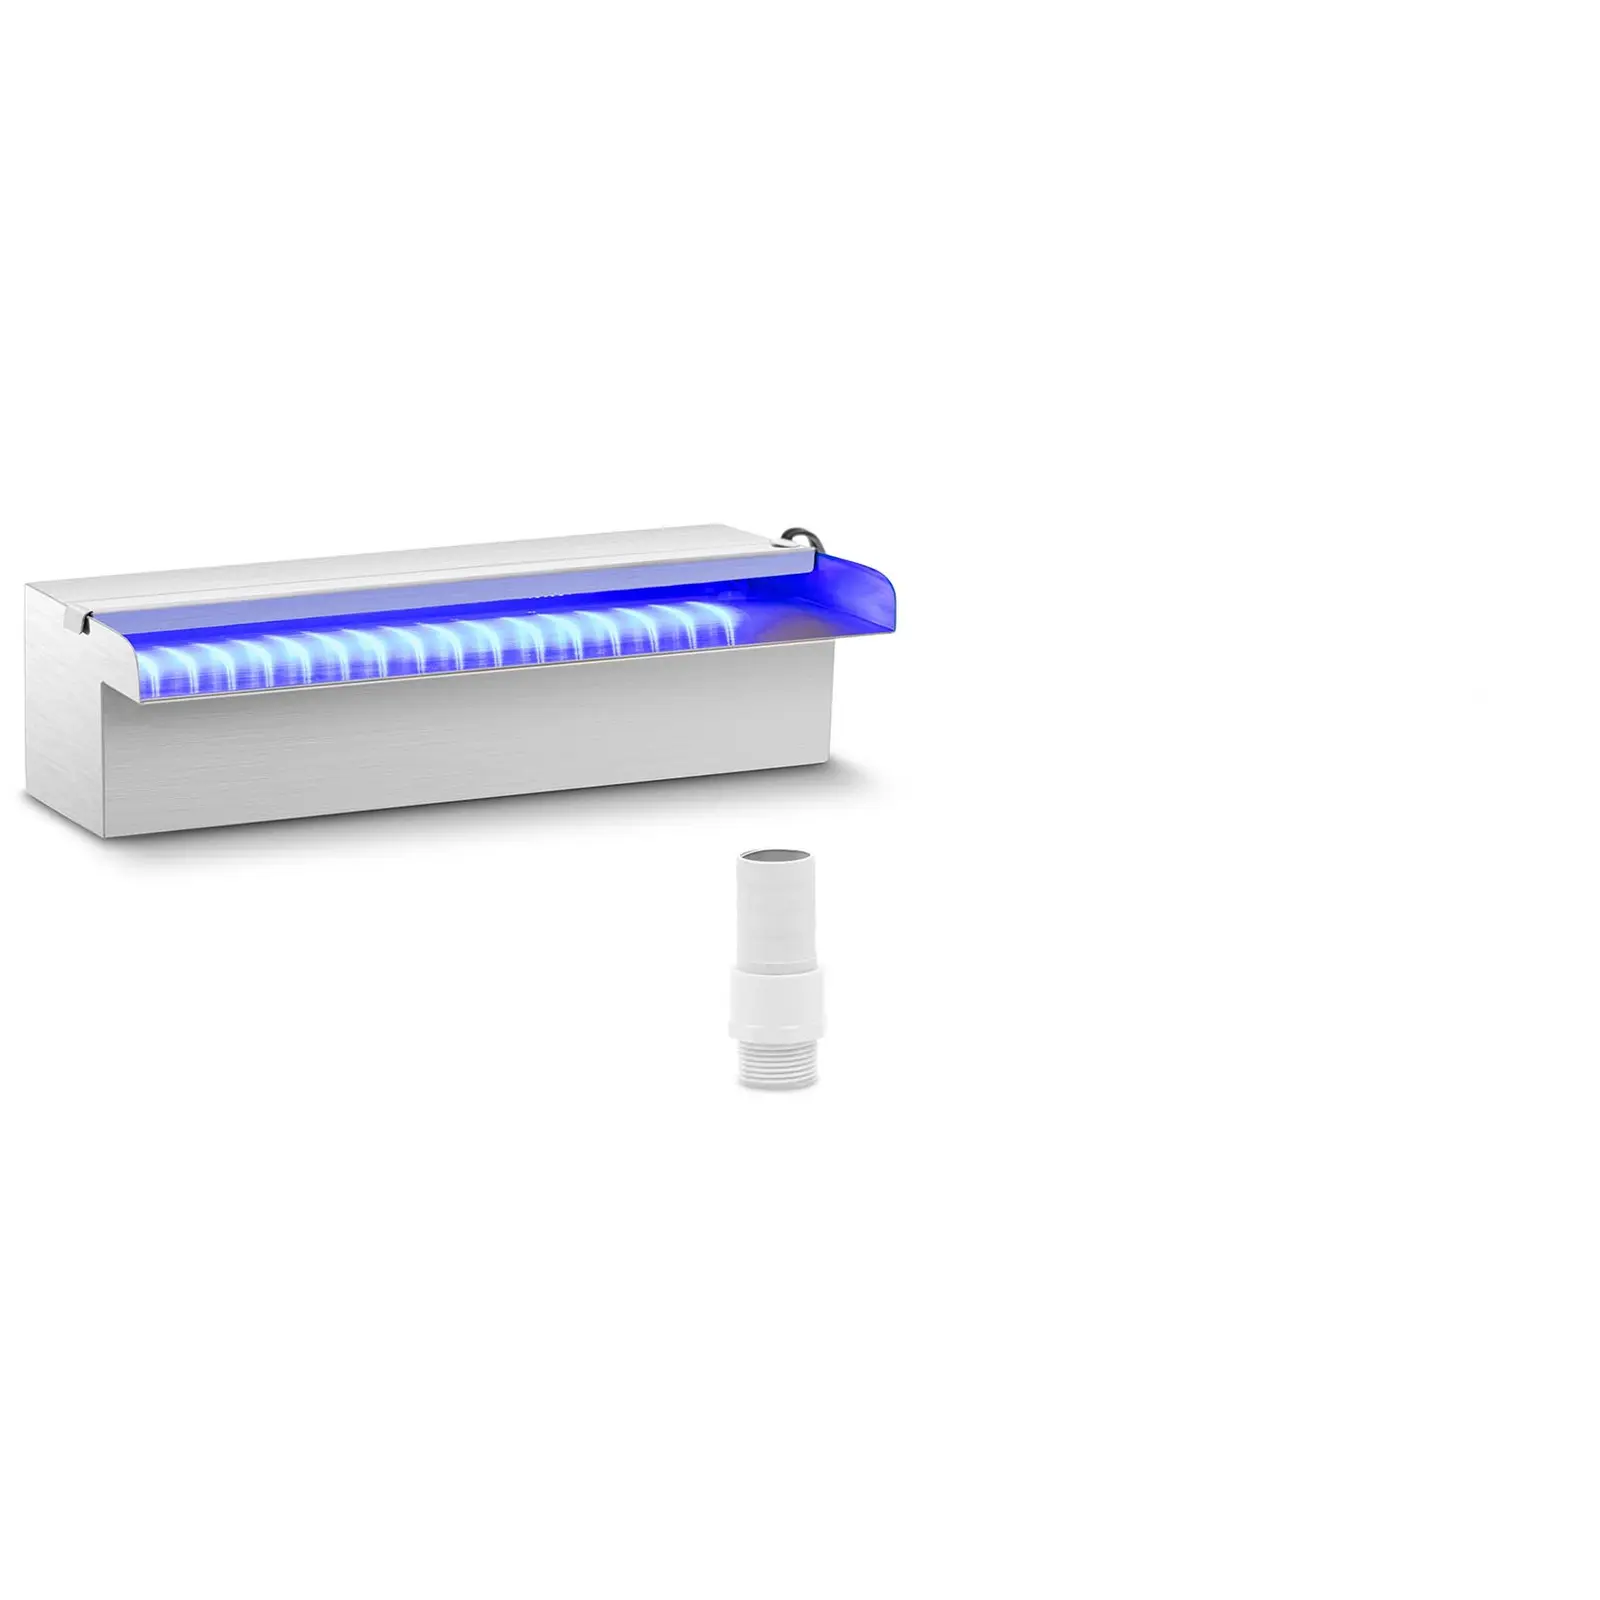 Vattenfall till pool - 30 cm - LED-belysning - Blå / vit - Öppet vattenutlopp